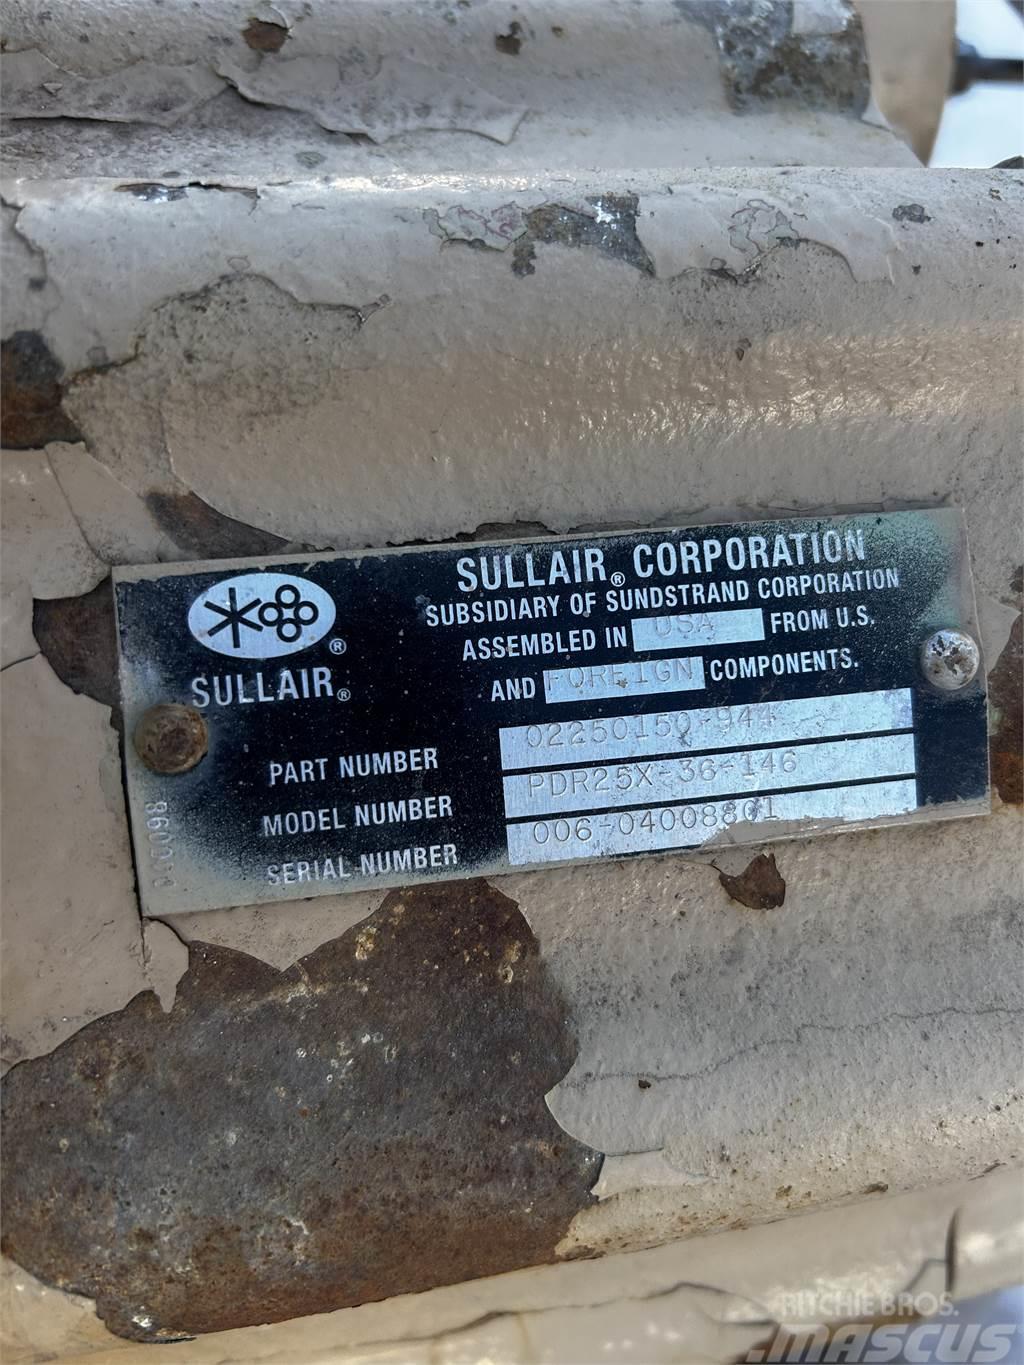 Sullair PDR25X-36-146 Compressor end Sprzęt do sprężania gazu